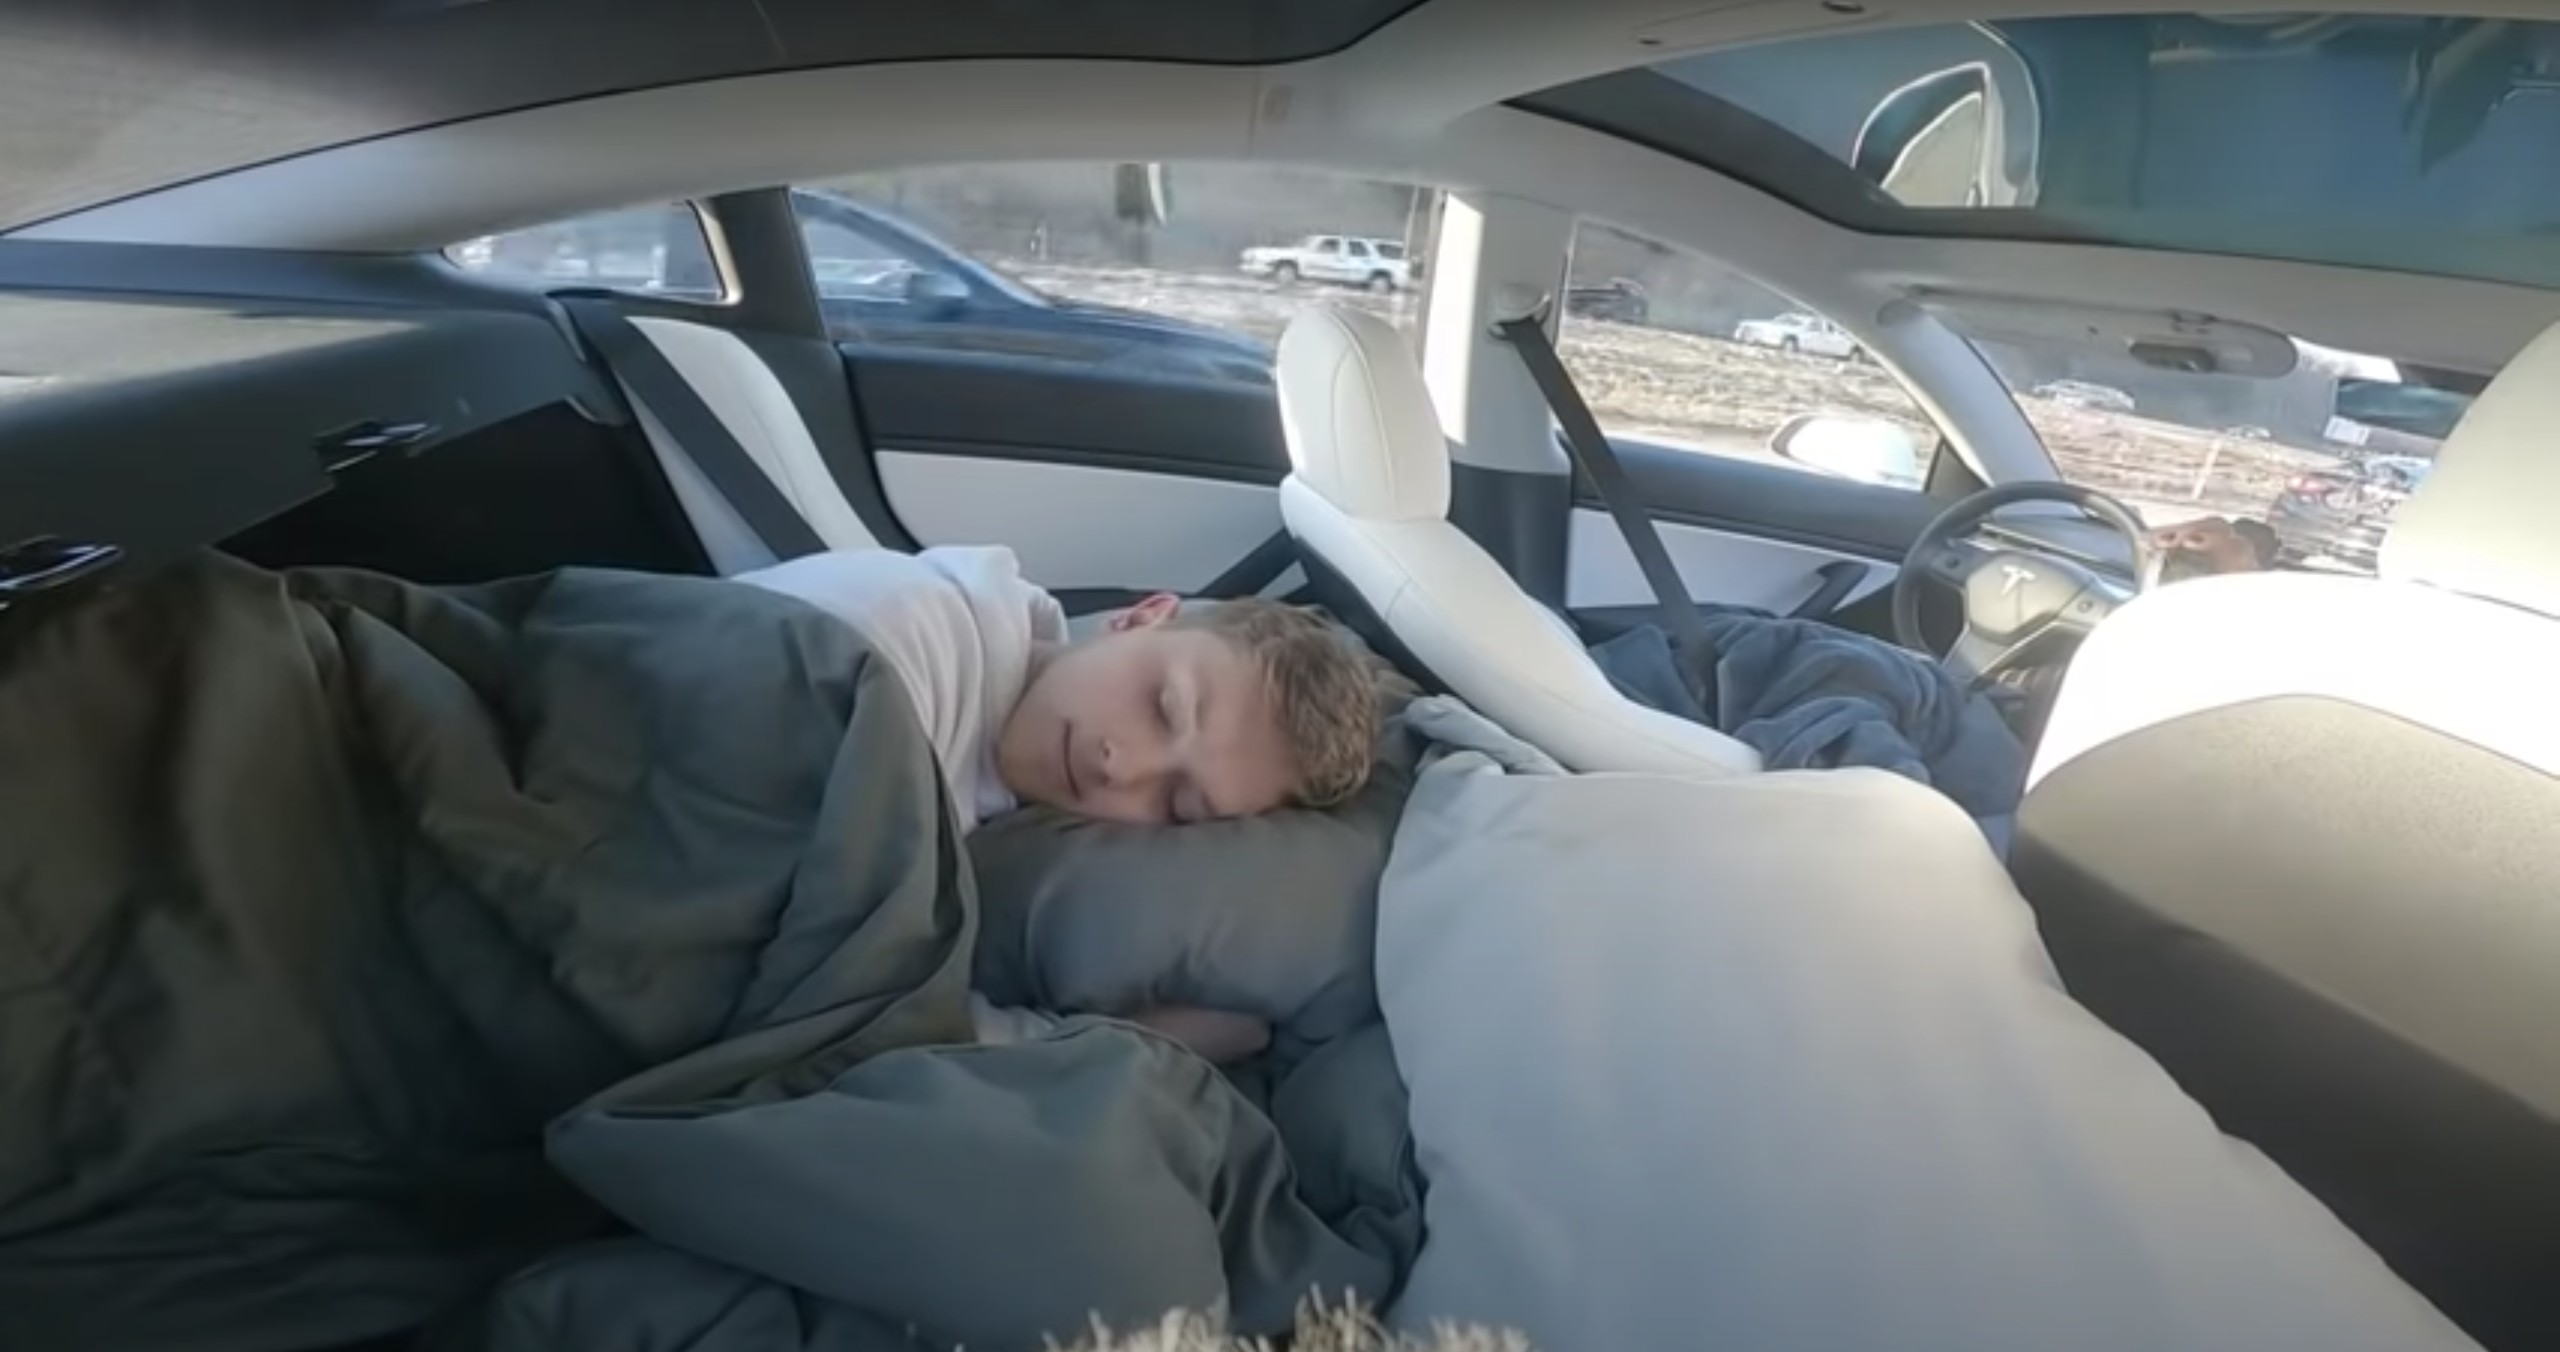 Youtuber choca ao dormir em Tesla no piloto automático: "Você devia ser preso" (Foto: Reprodução)